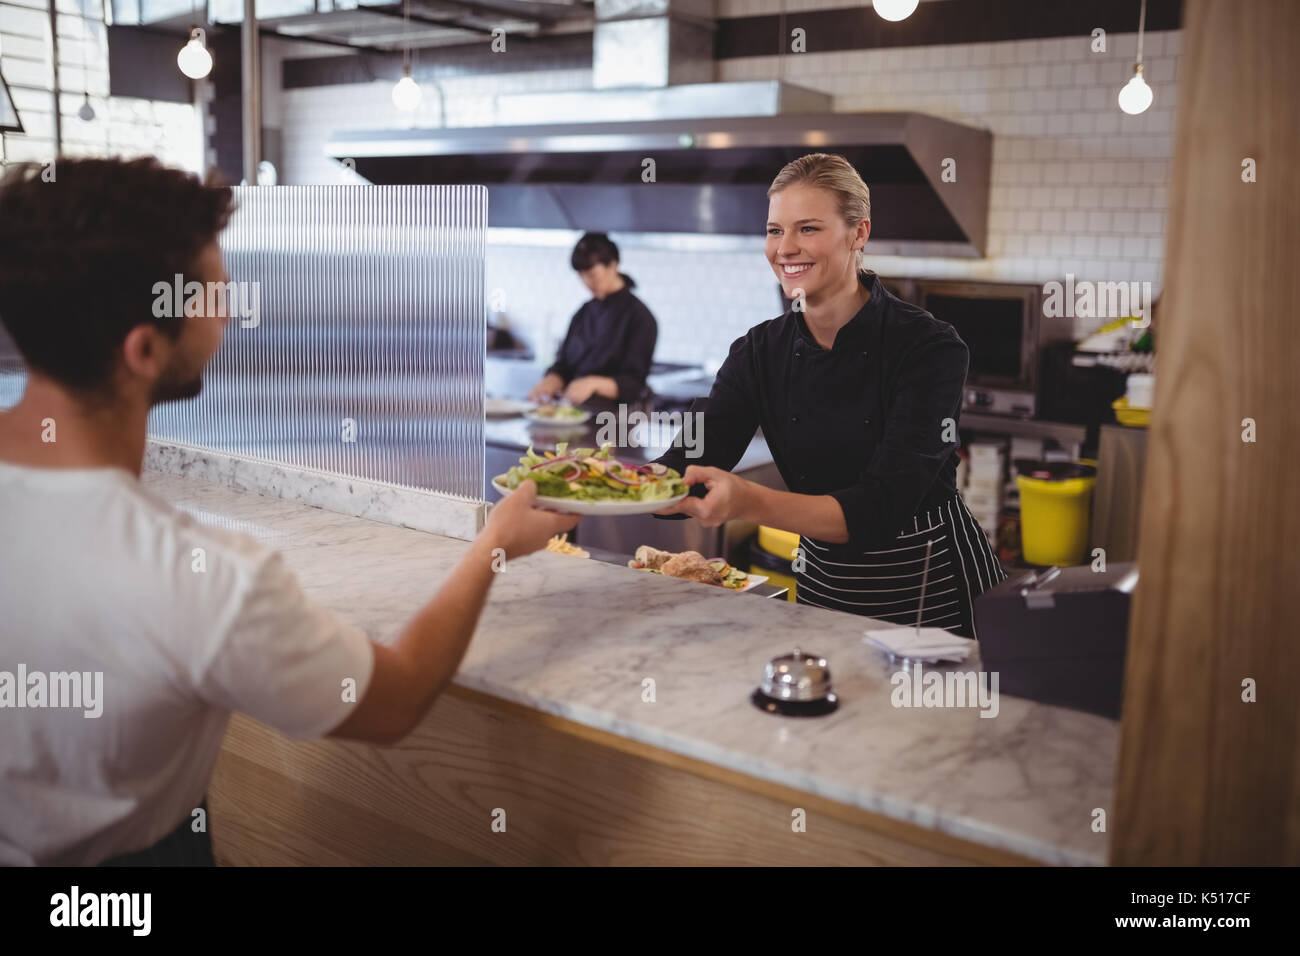 Lächelnd weibliche Küchenchef mit frischen griechischen Salat an Coffee shop Kellner Stockfoto